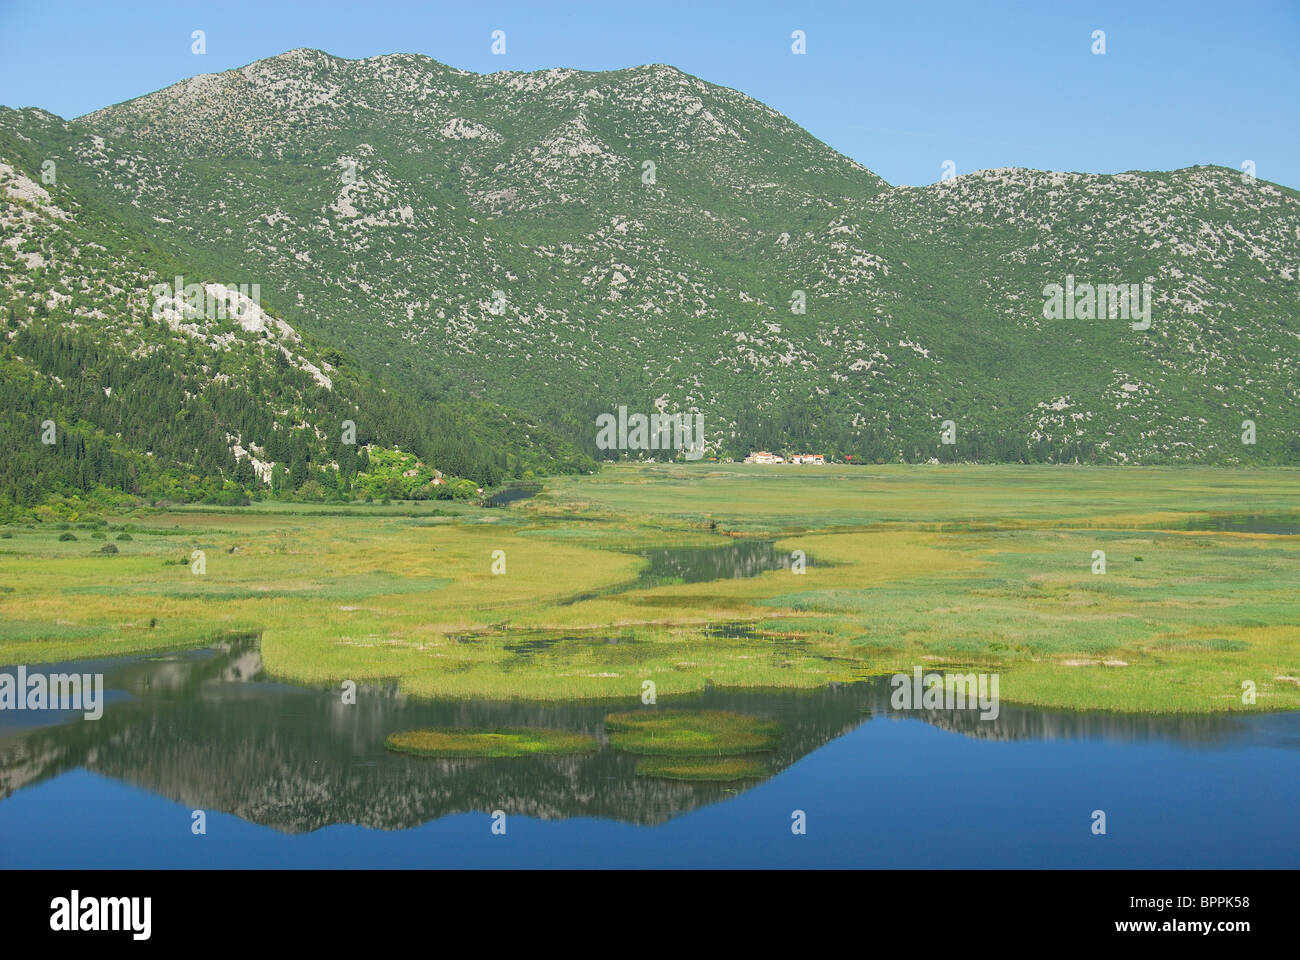 Kroatien. Ein Blick auf das Neretva-Delta in der Nähe von Ploče in Süddalmatien, wie aus der Kroatien - Bosnien Grenze gesehen. Stockfoto